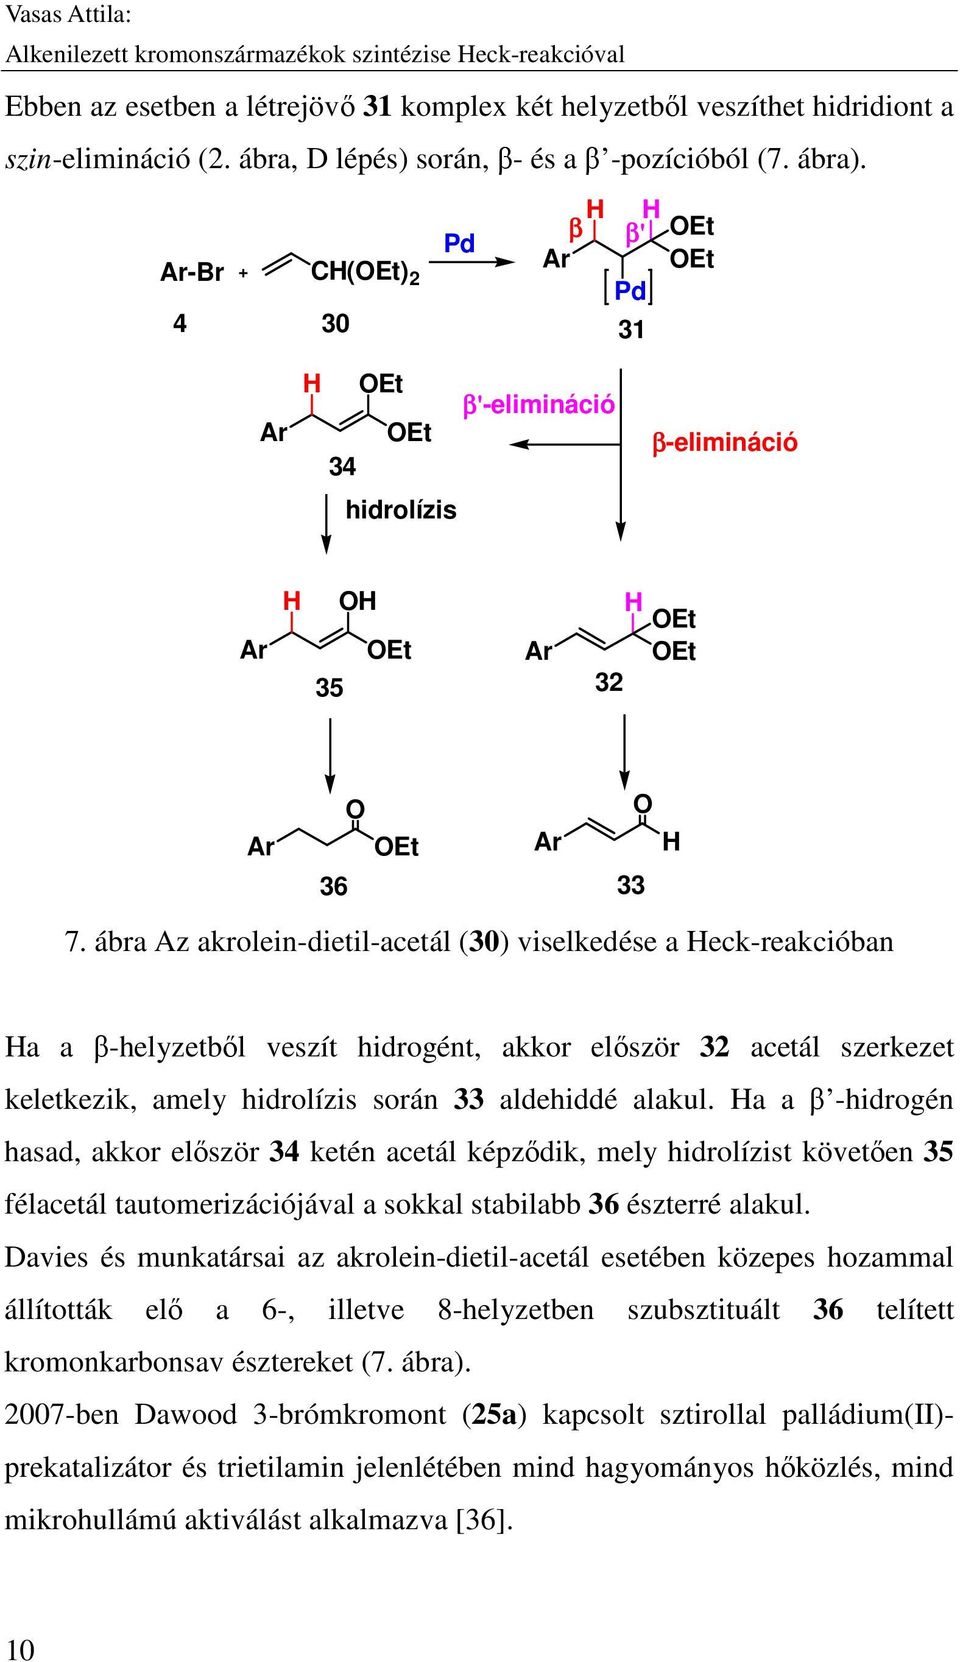 ábra Az akrolein-dietil-acetál (30) viselkedése a Heck-reakcióban Ha a β-helyzetből veszít hidrogént, akkor először 32 acetál szerkezet keletkezik, amely hidrolízis során 33 aldehiddé alakul.